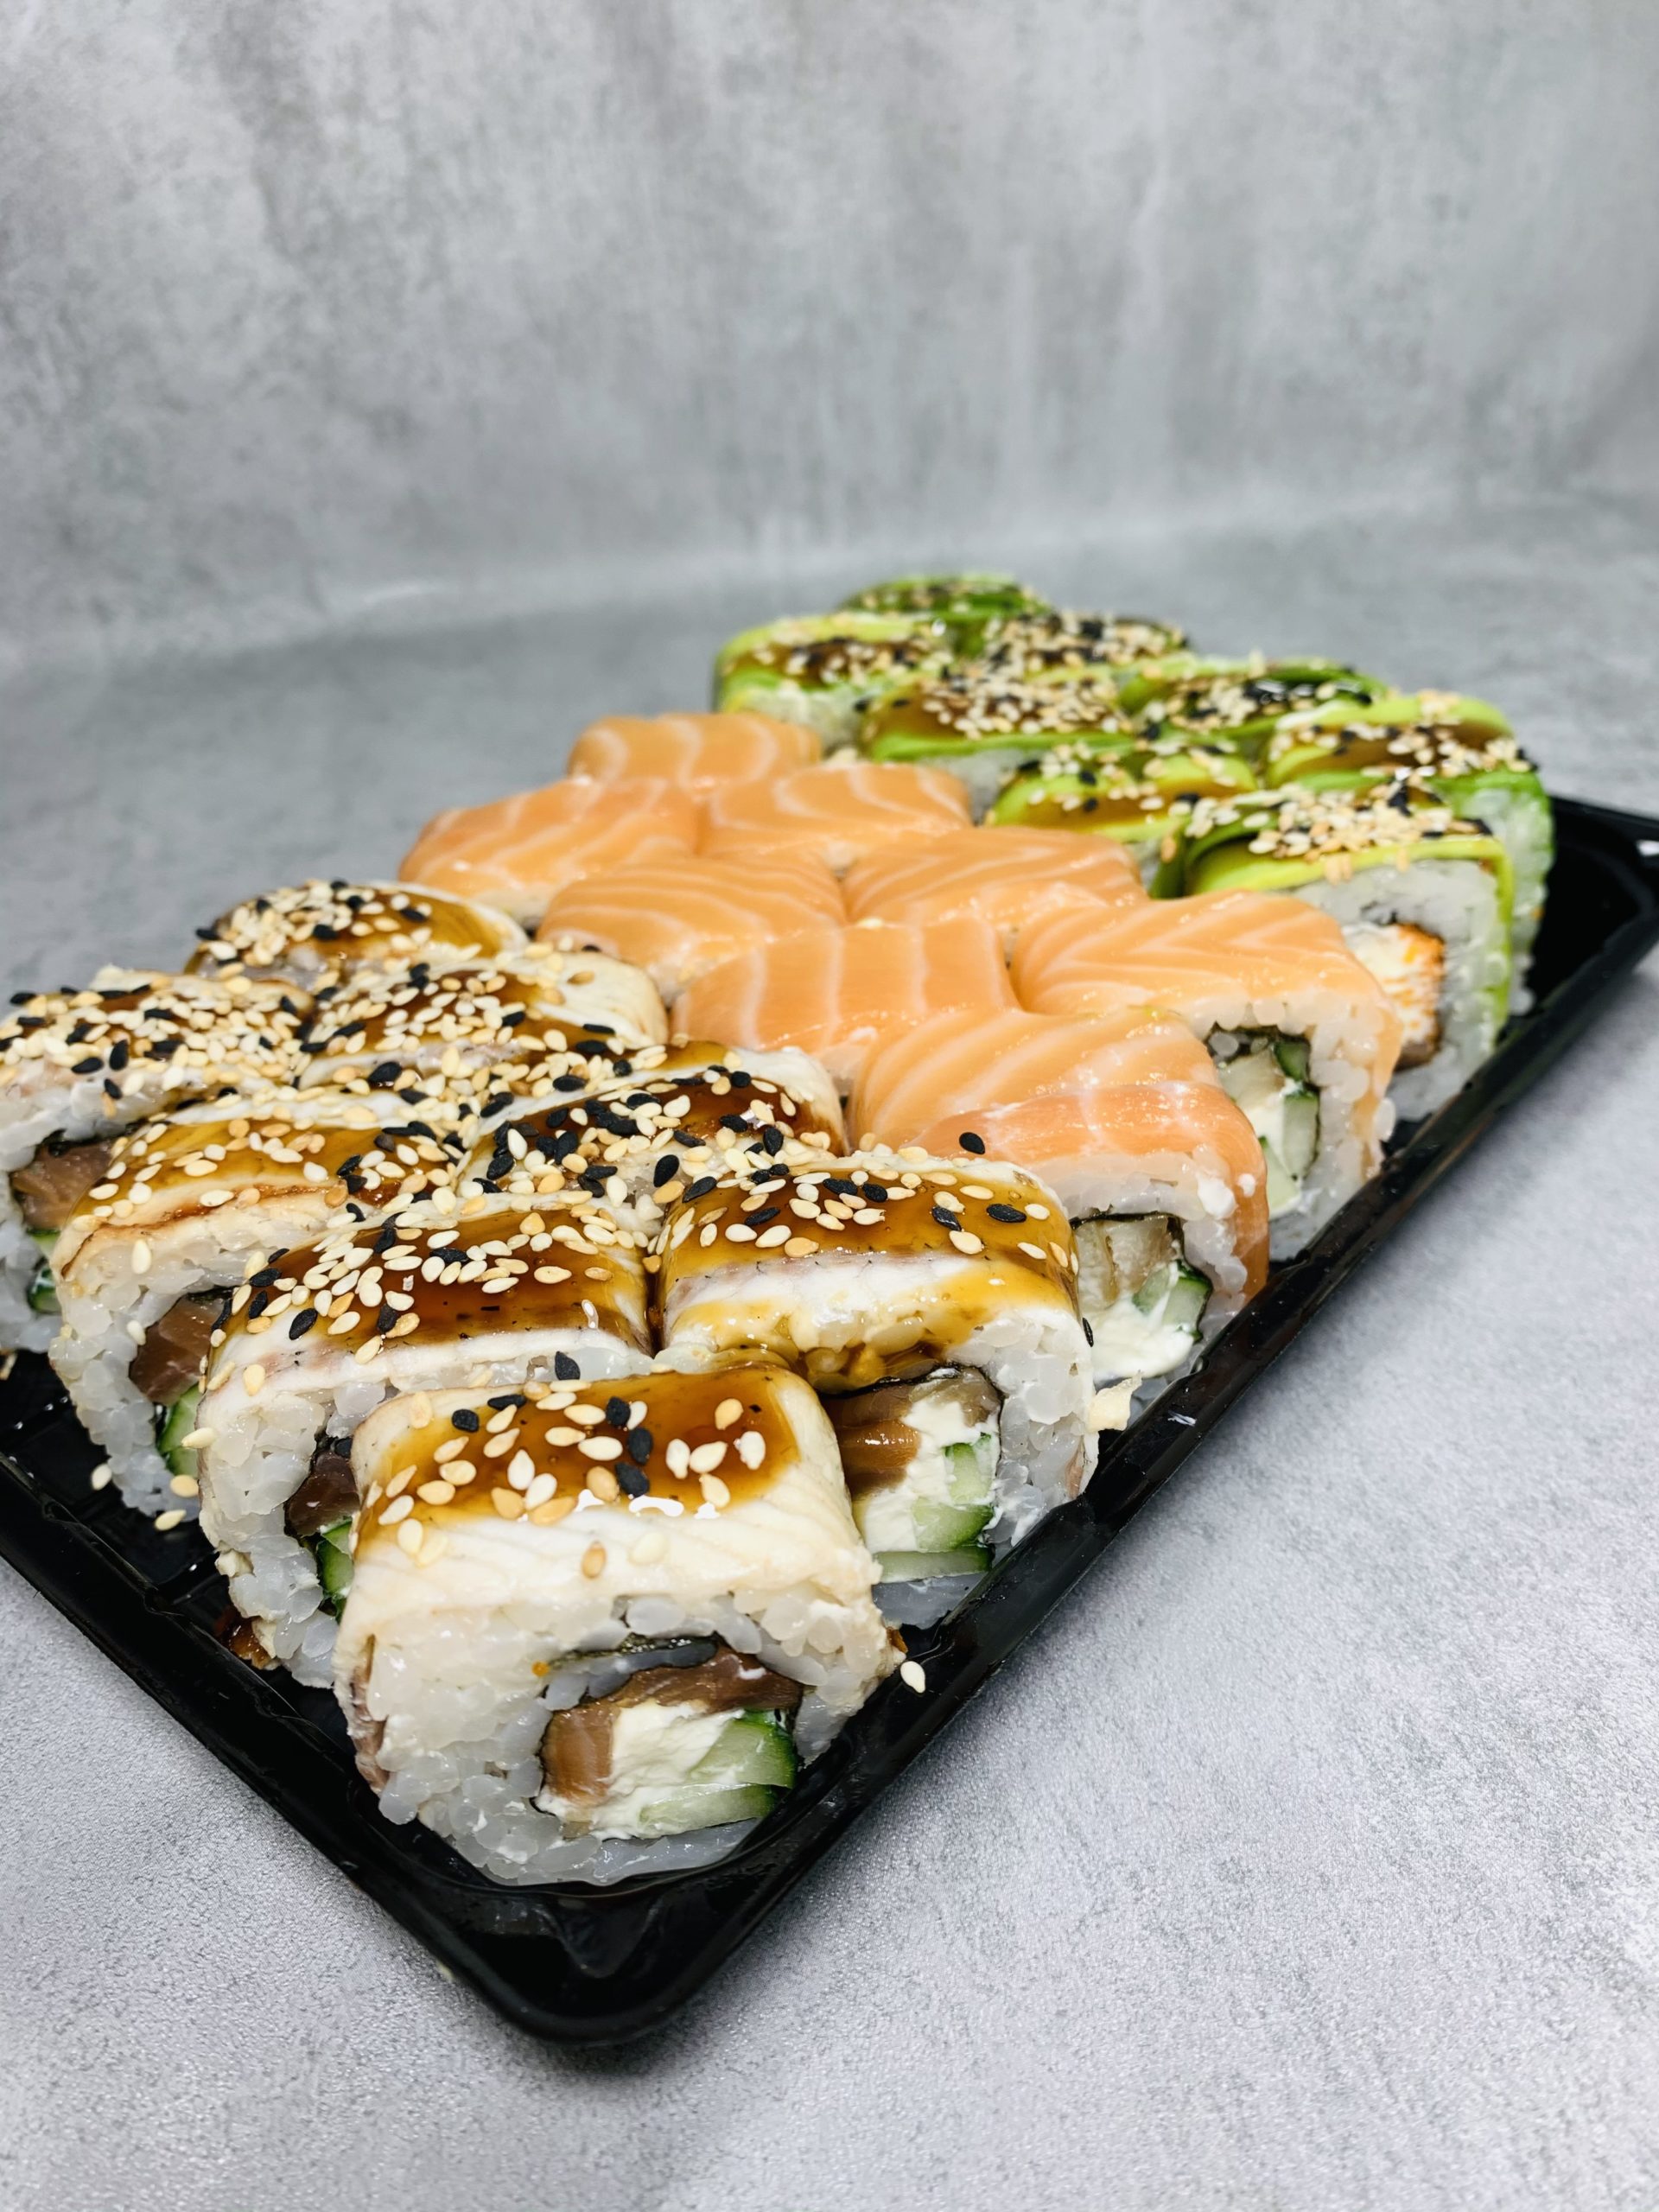 Заказать суши с доставкой мафия фото 65